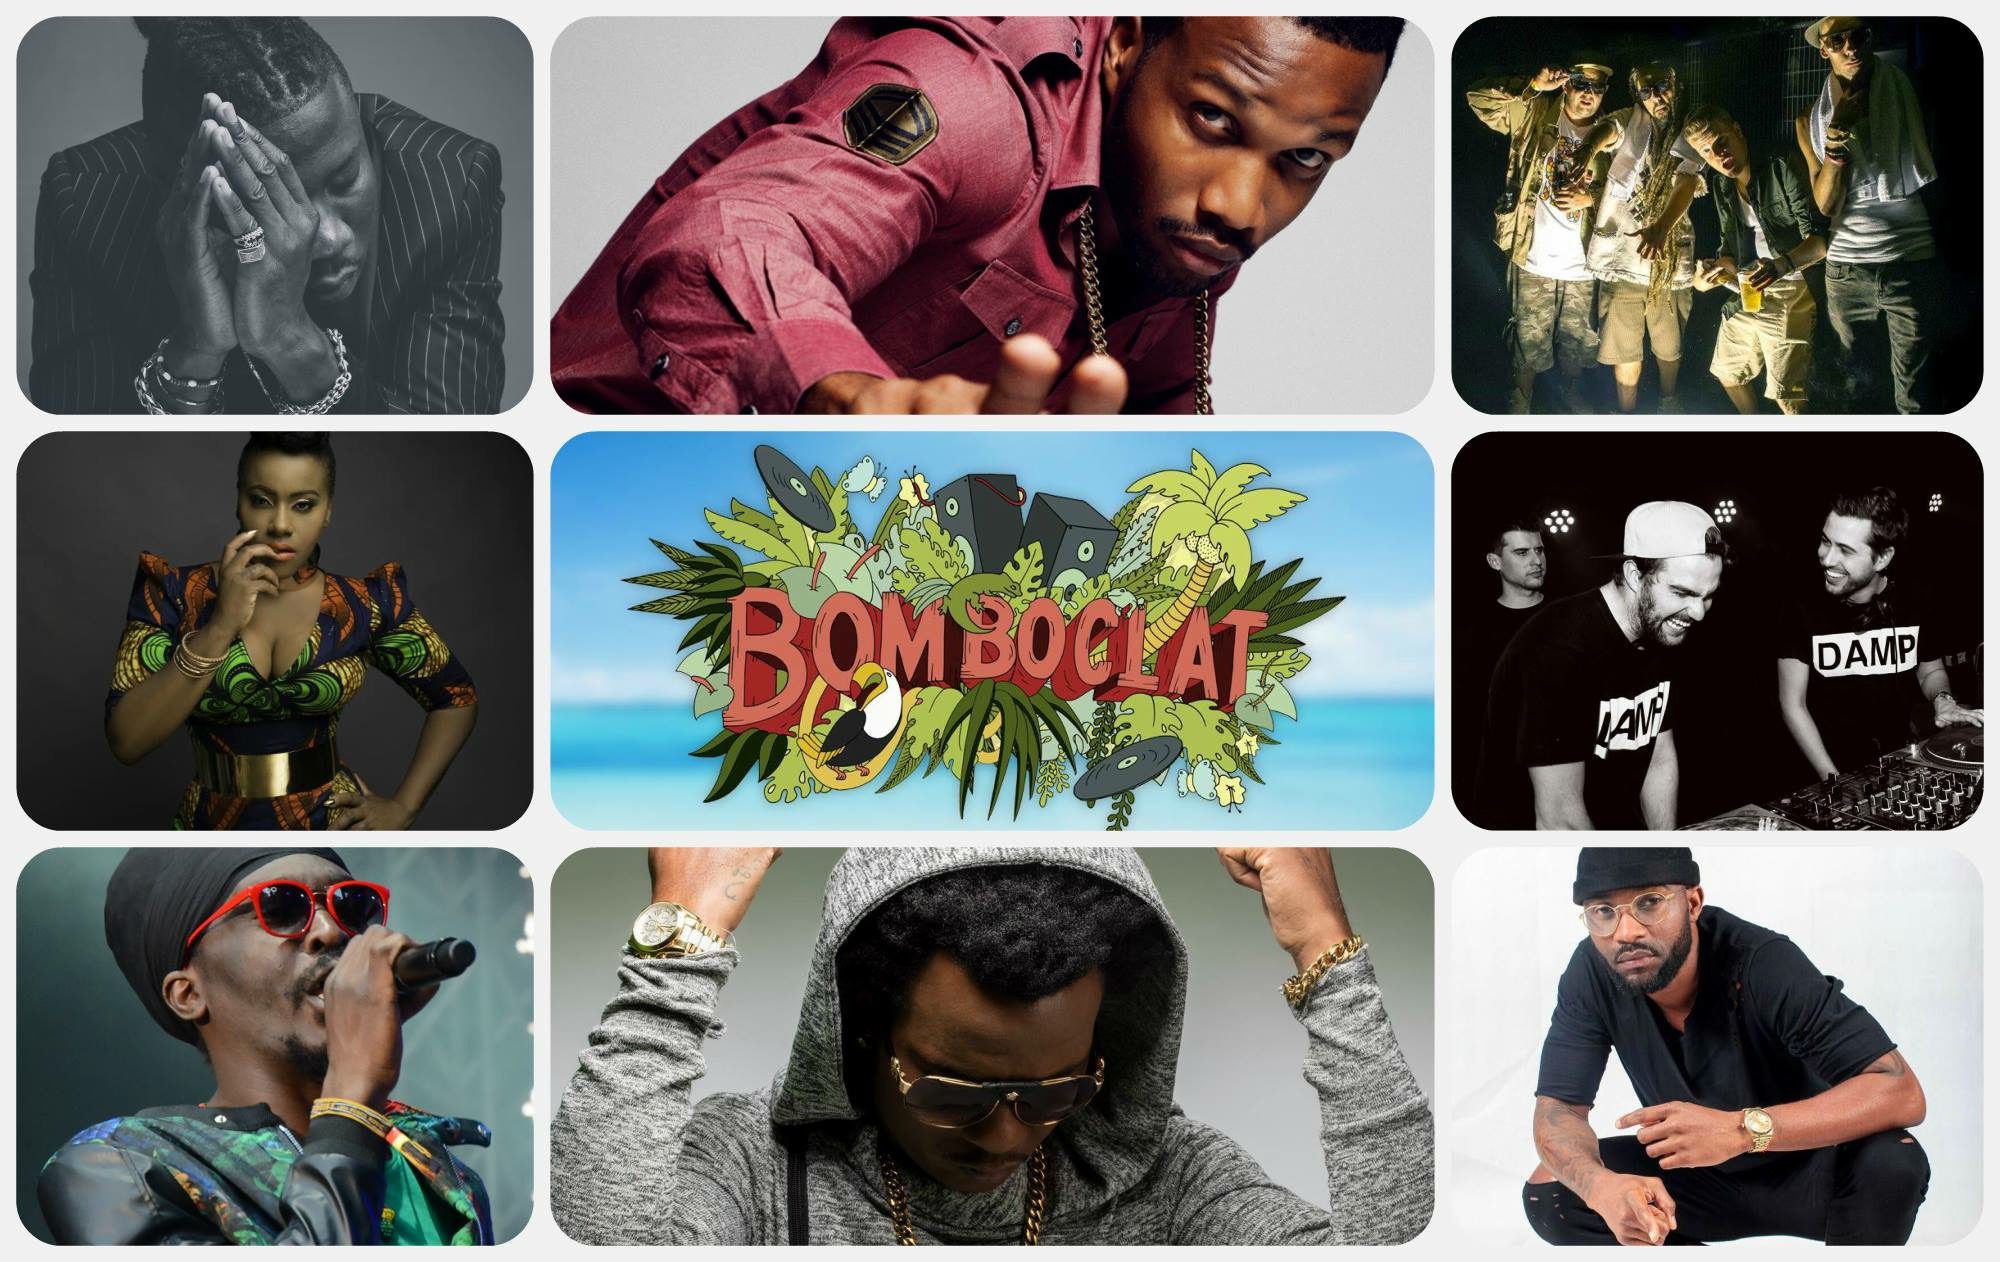 Stonebwoy headlines Bomboclat Festival with Konshens, Charly Black, Agent Sasco, Etana, Anthony B, others in Belgium this July.